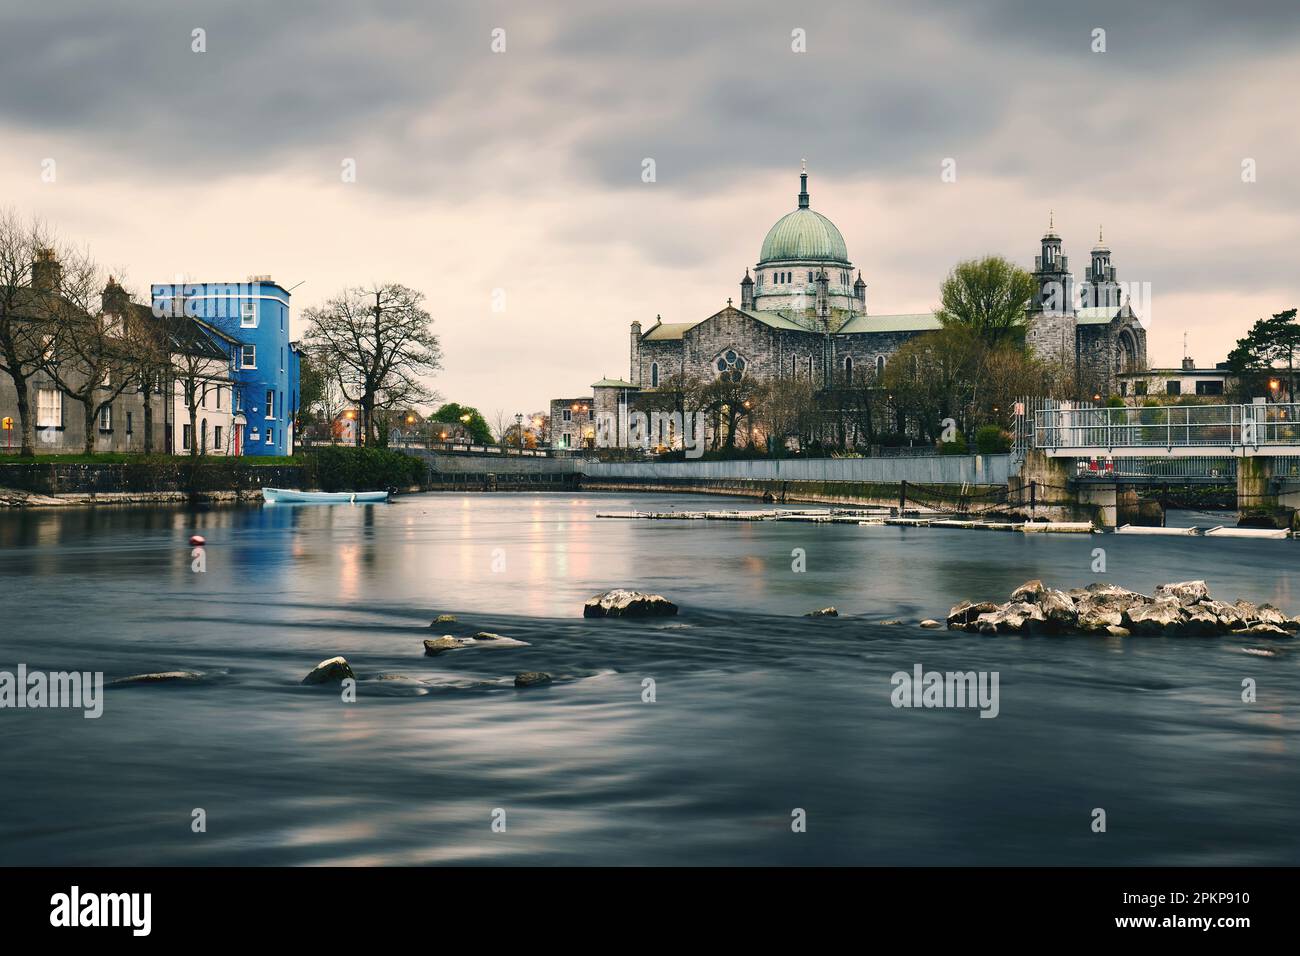 Wunderschöne Stadtlandschaft mit irischem Wahrzeichen Galway Kathedrale am Corrib River in Galway City, Irland Stockfoto